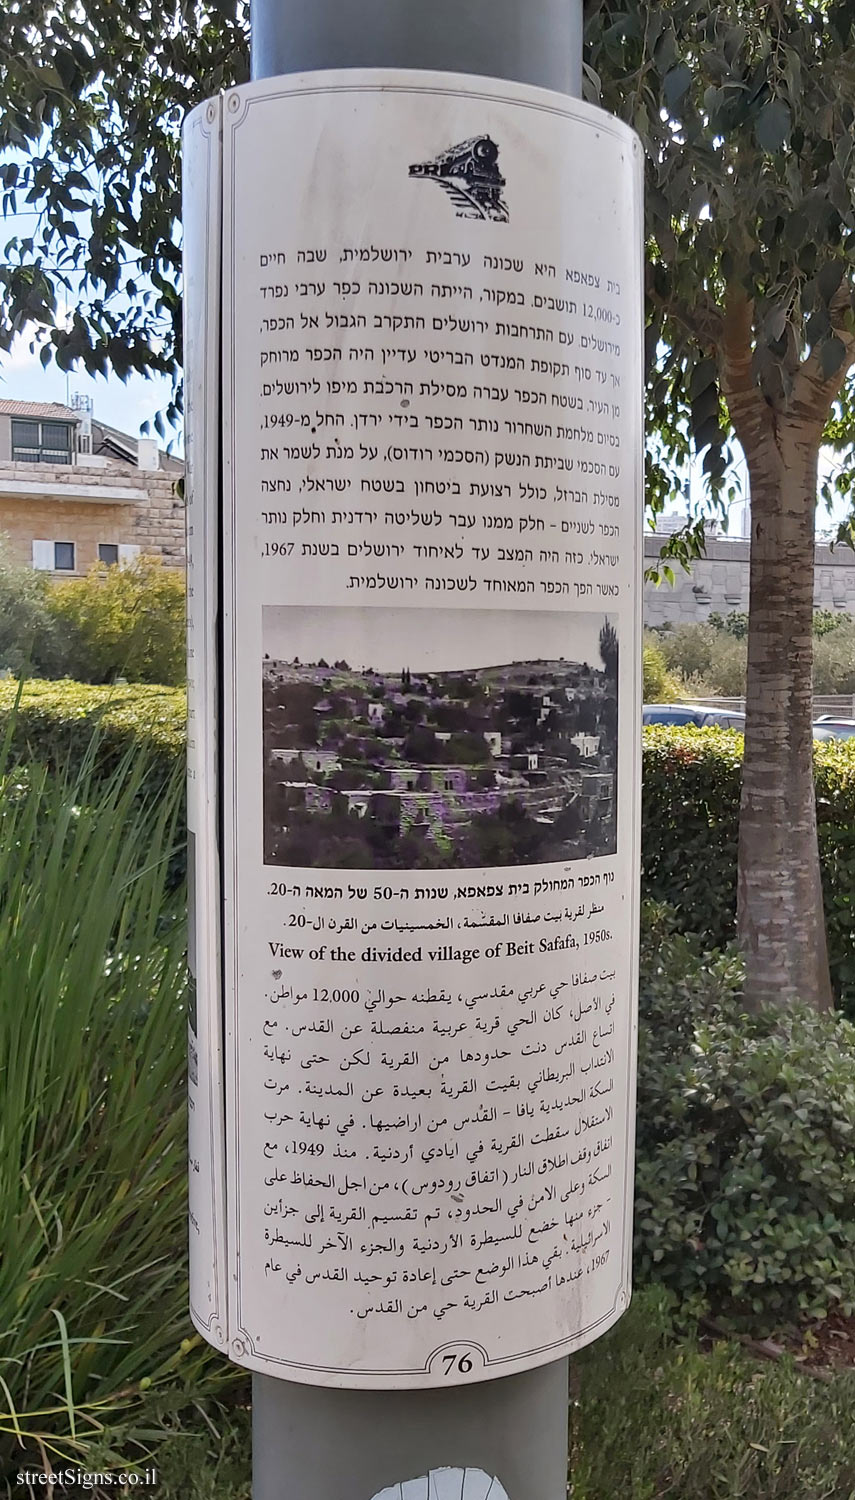 Jerusalem - HaMesila Park - Beit Safafa neighborhood (76)